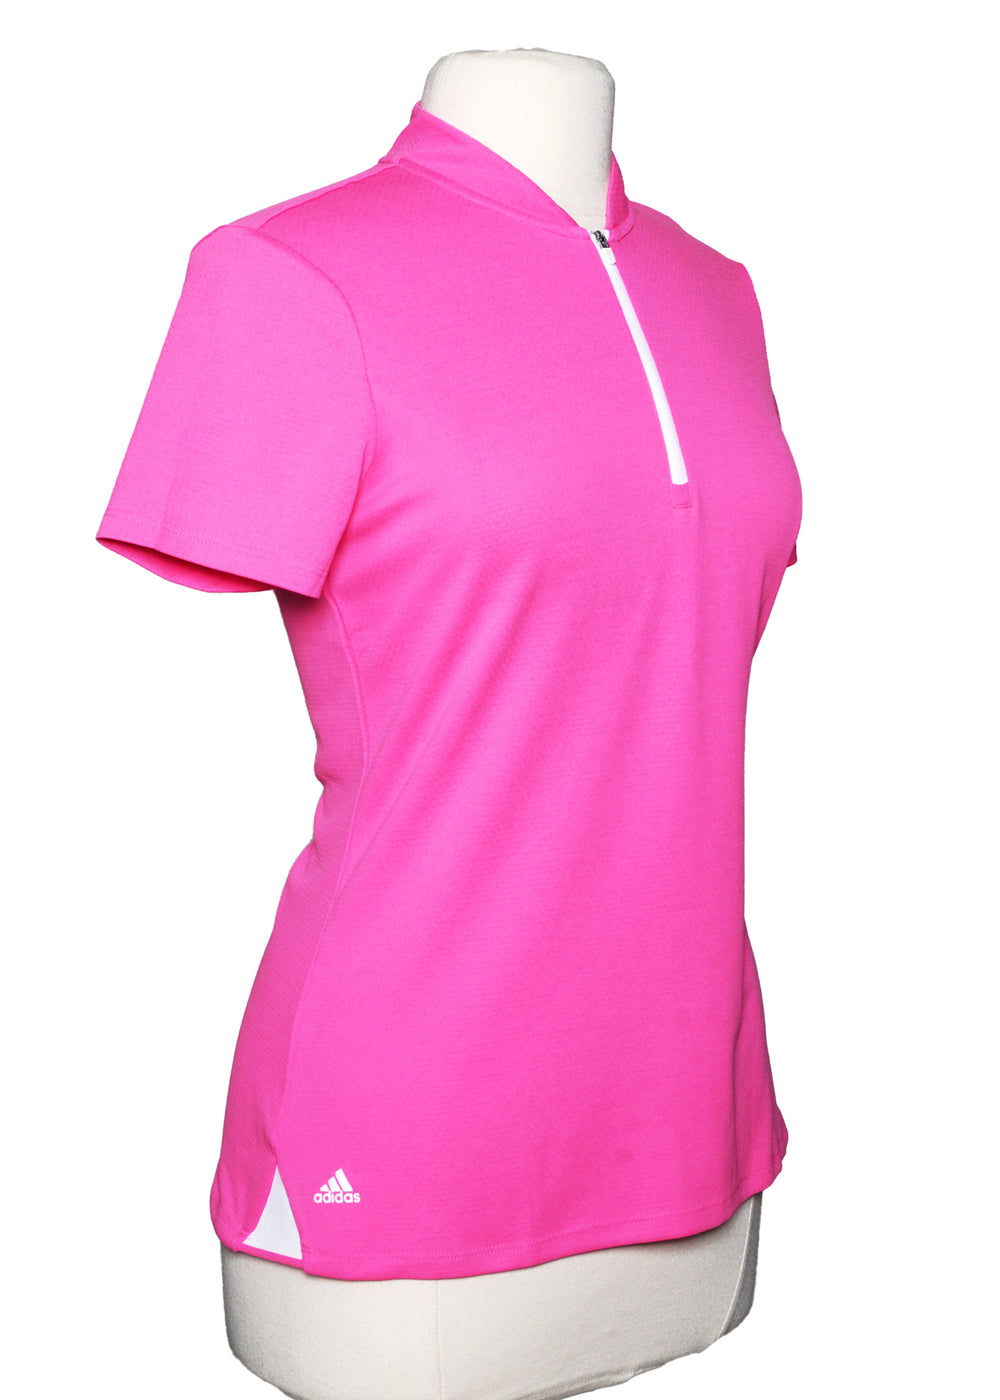 Adidas SS Heat.Rdy Top - Pink -  Size Medium - Skorzie